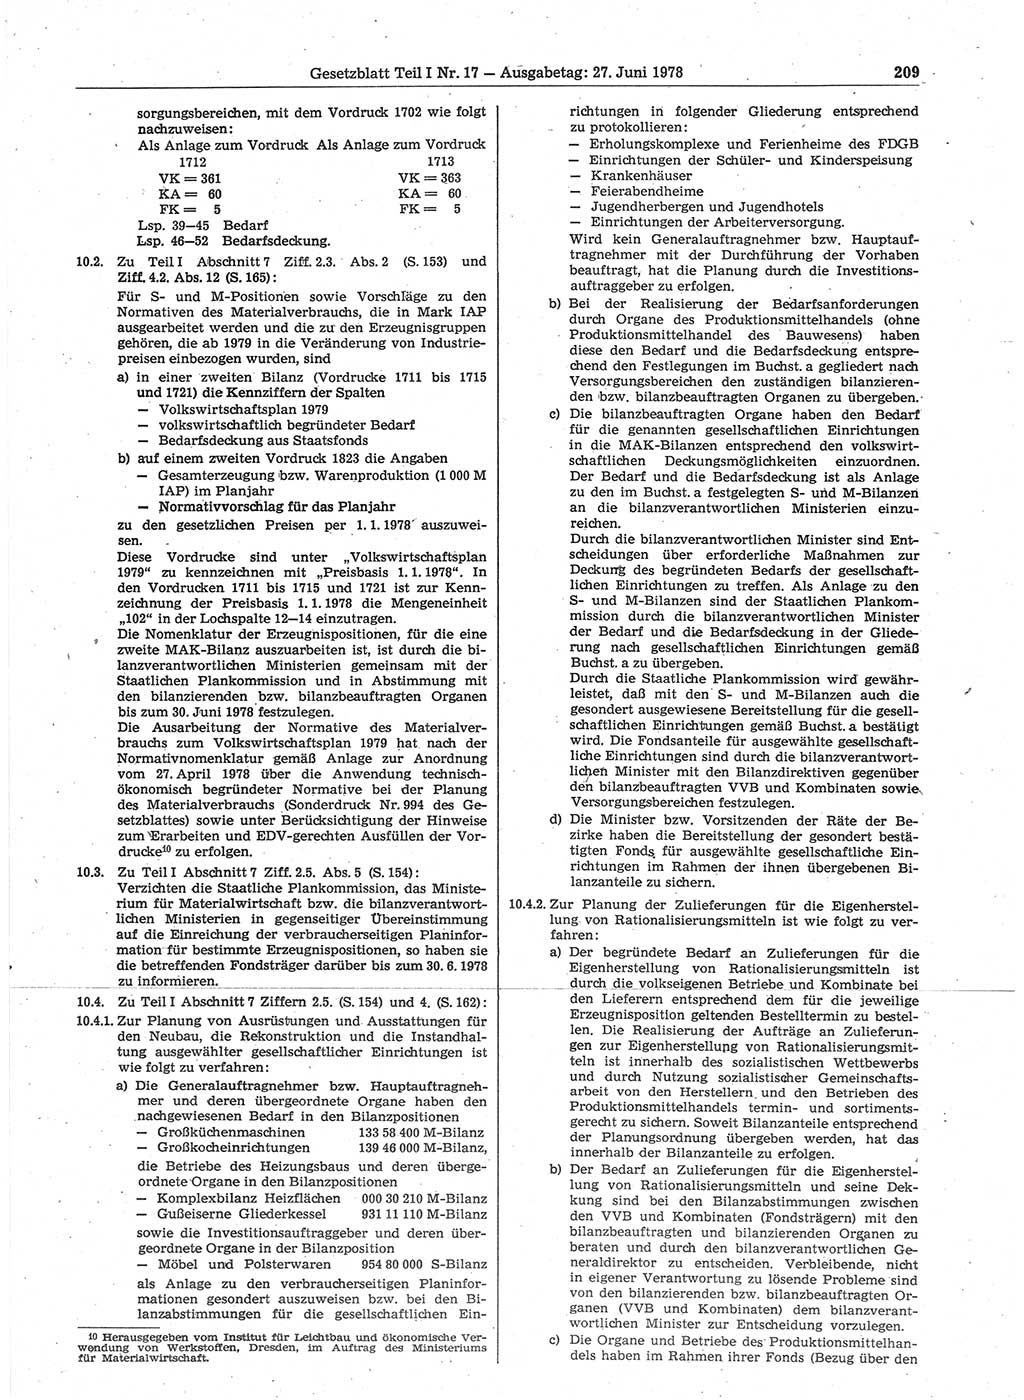 Gesetzblatt (GBl.) der Deutschen Demokratischen Republik (DDR) Teil Ⅰ 1978, Seite 209 (GBl. DDR Ⅰ 1978, S. 209)